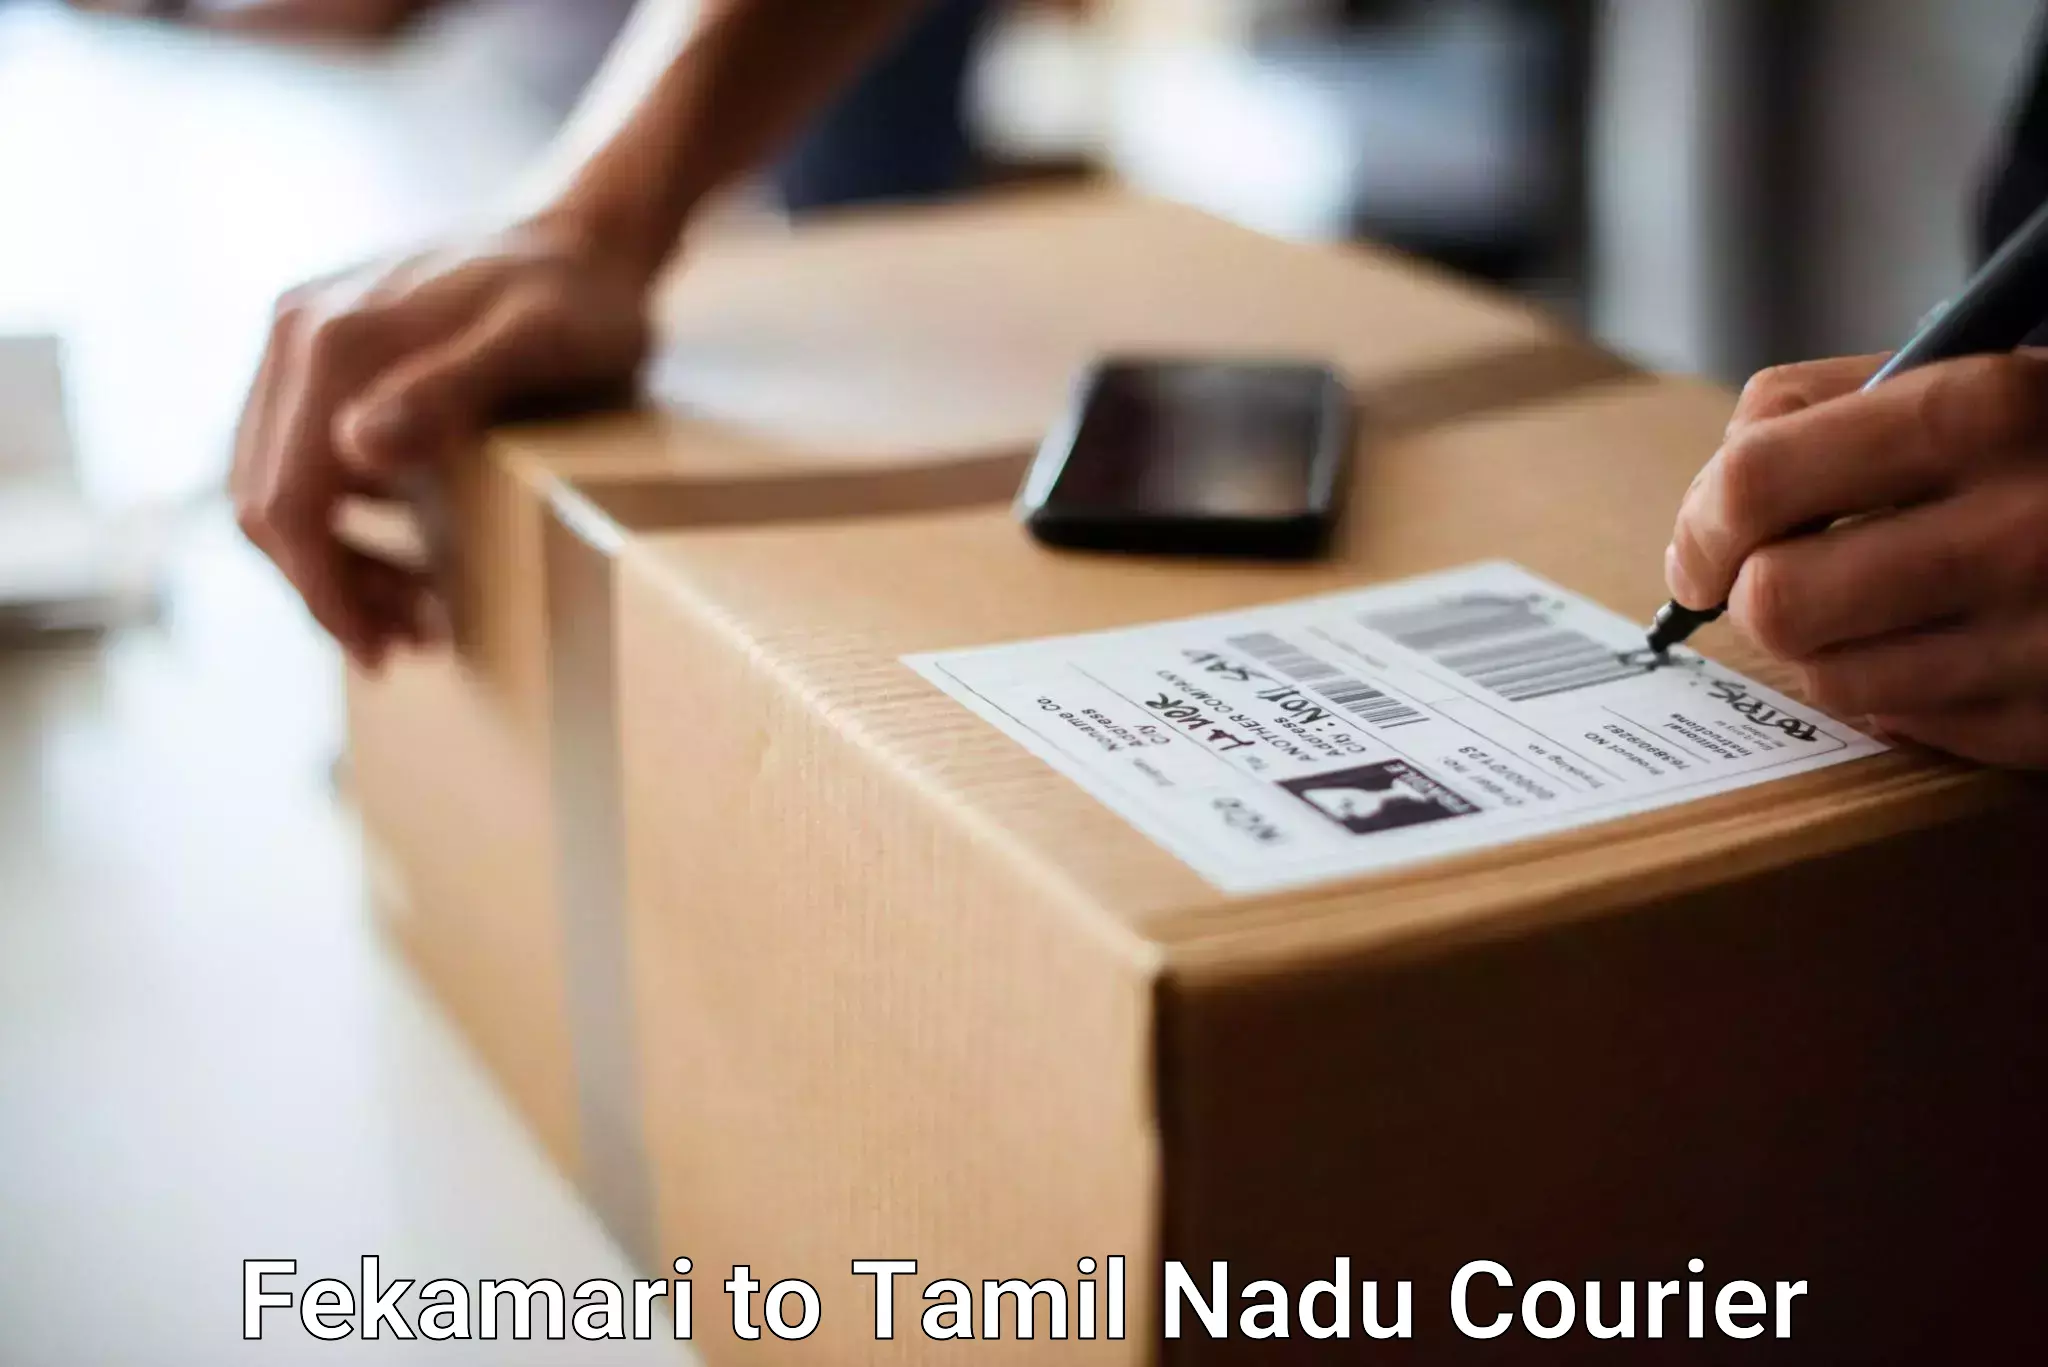 Baggage transport updates Fekamari to Tamil Nadu